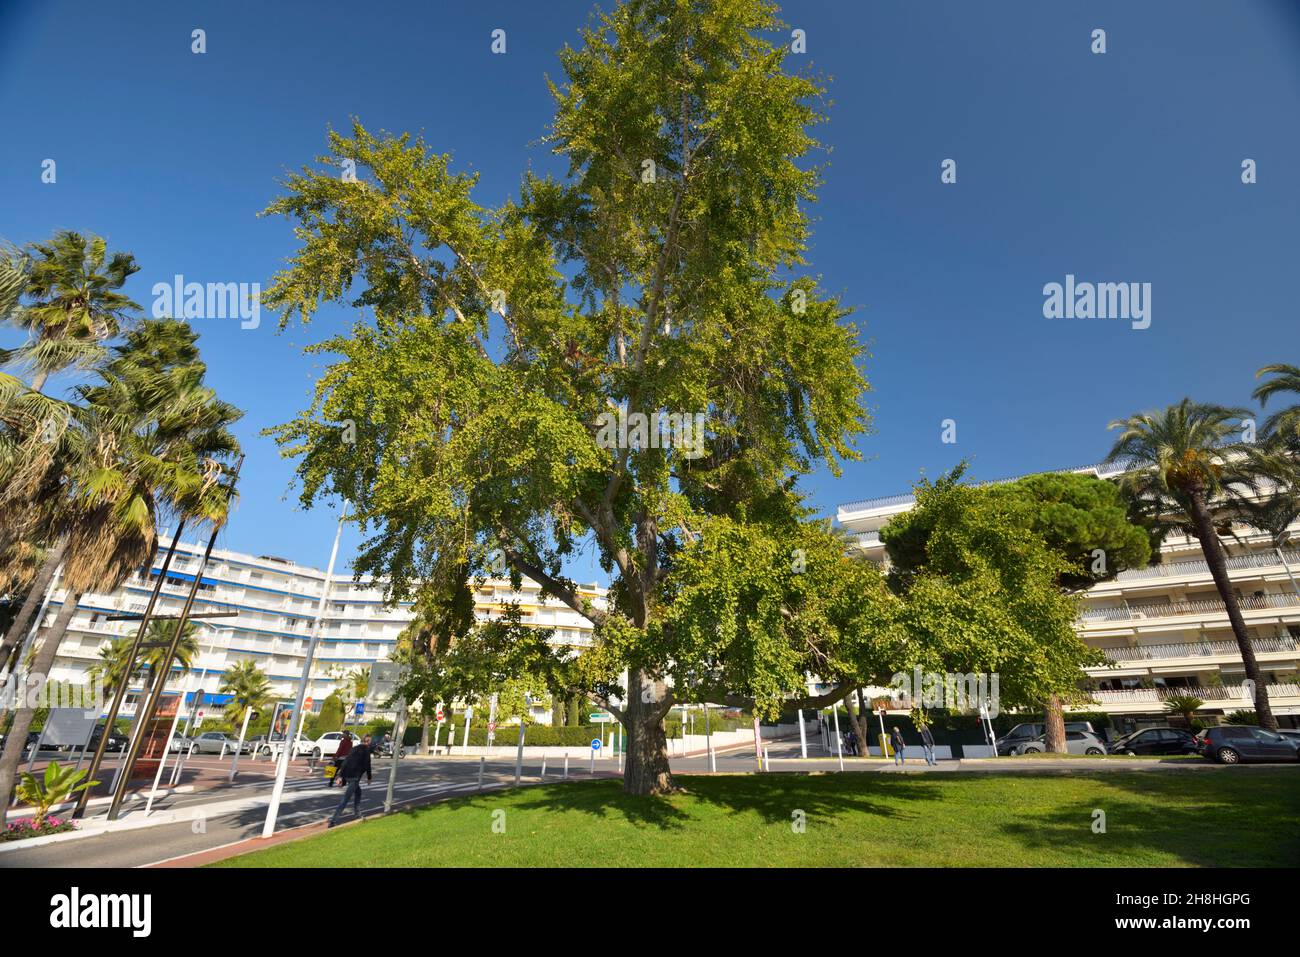 France, Alpes-Maritimes, Cannes, Boulevard de la Croisette, remarkable tree Stock Photo